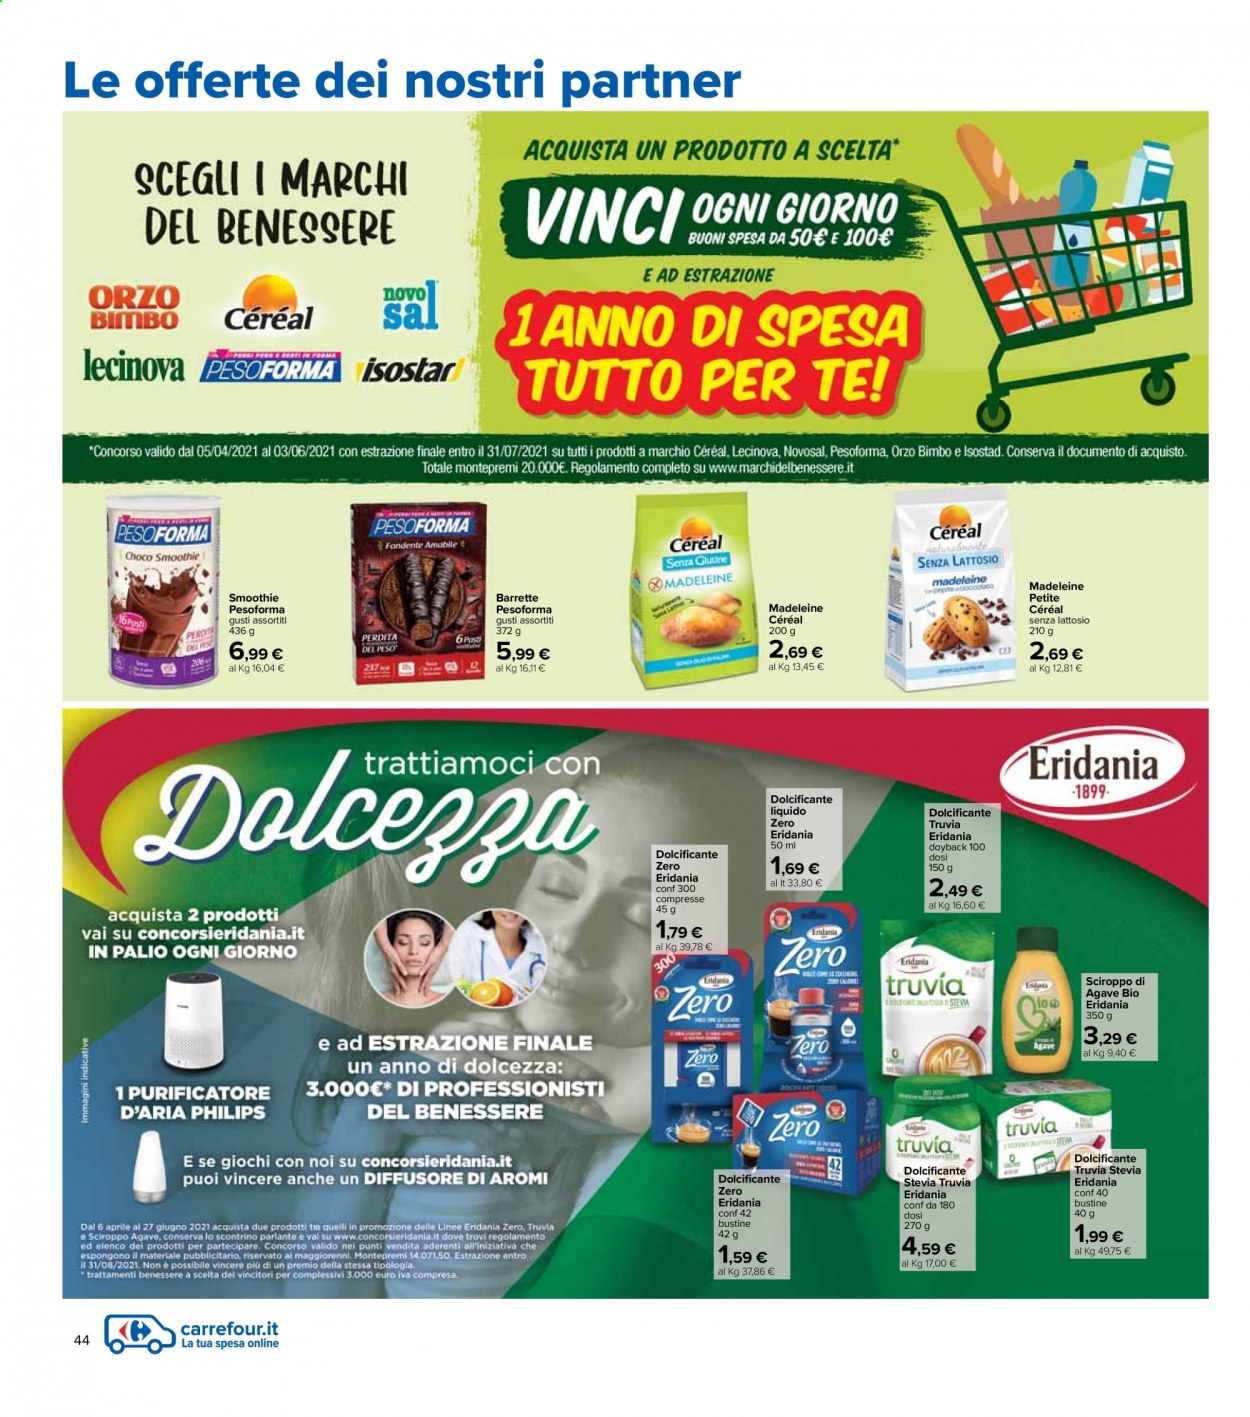 thumbnail - Volantino Carrefour - 6/4/2021 - 21/4/2021 - Prodotti in offerta - Philips, madeleines, barretta, dolcificante, orzo, smoothie, orzo solubile, diffusore, purificatore. Pagina 44.